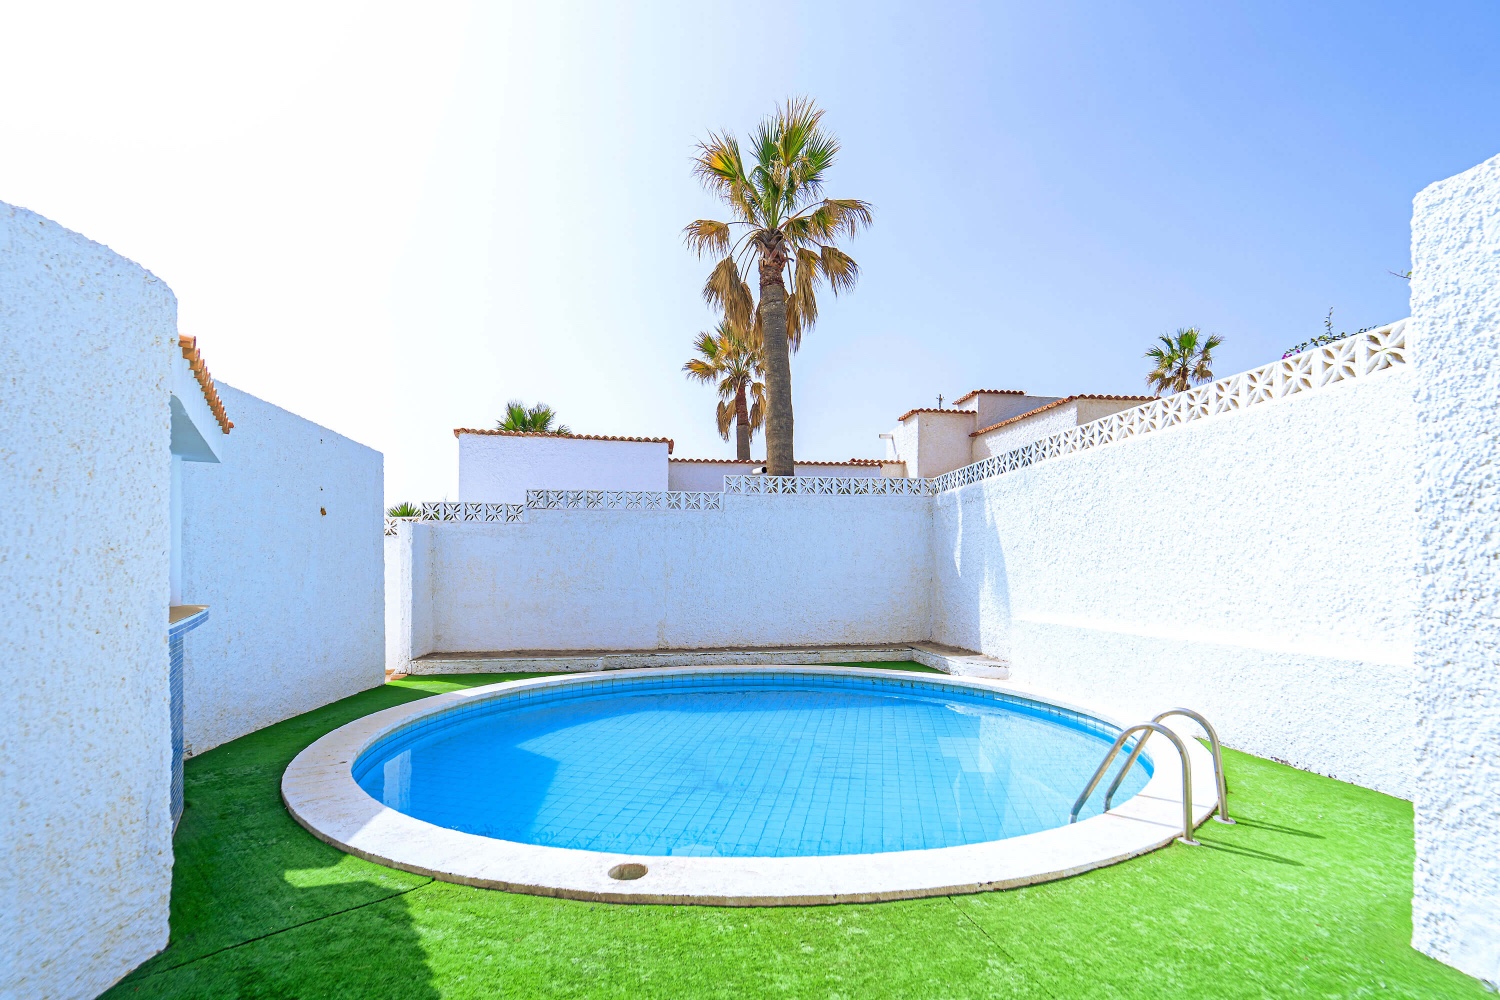 Hyggeligt sommerhus med privat pool i et villakvarter tæt ved havet